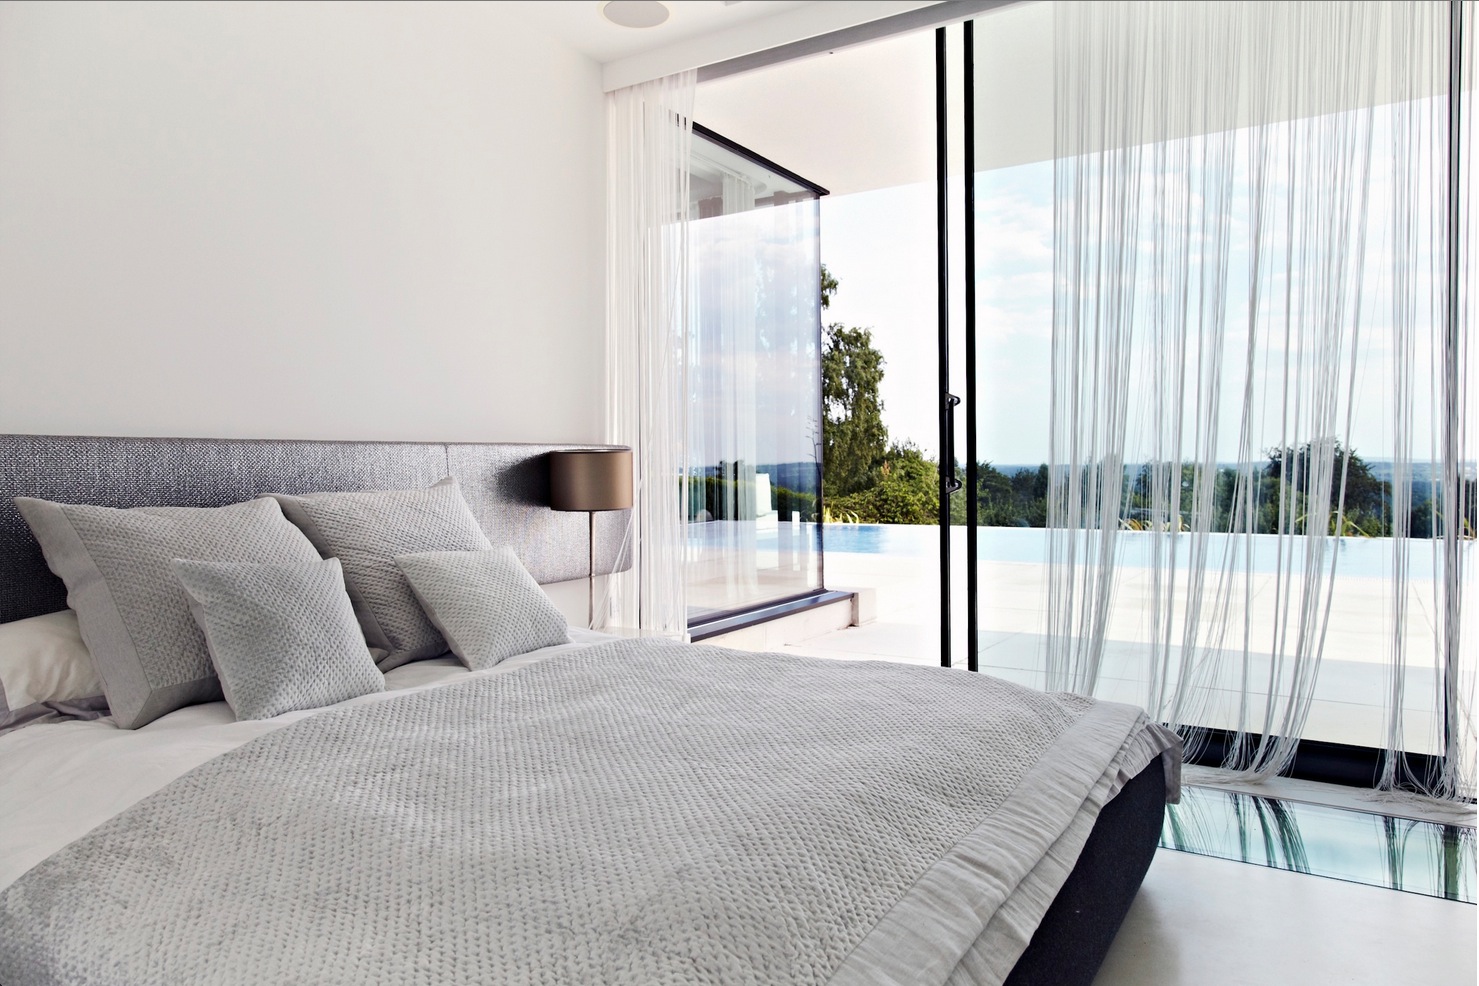 bedroom furniture with glass doors